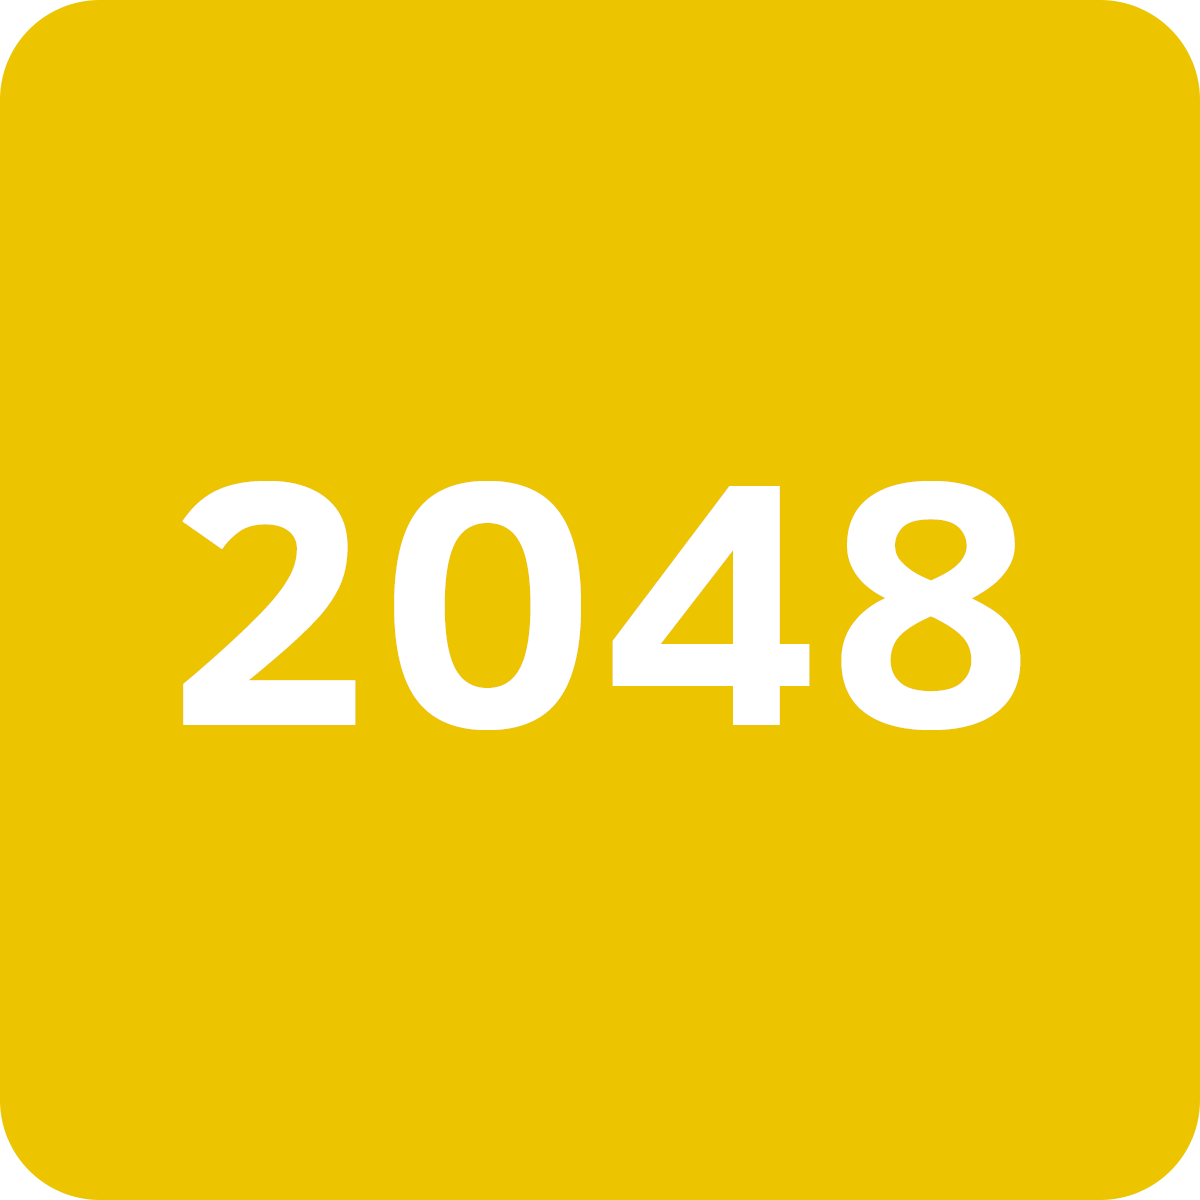 2048 tile generator - OpenProcessing